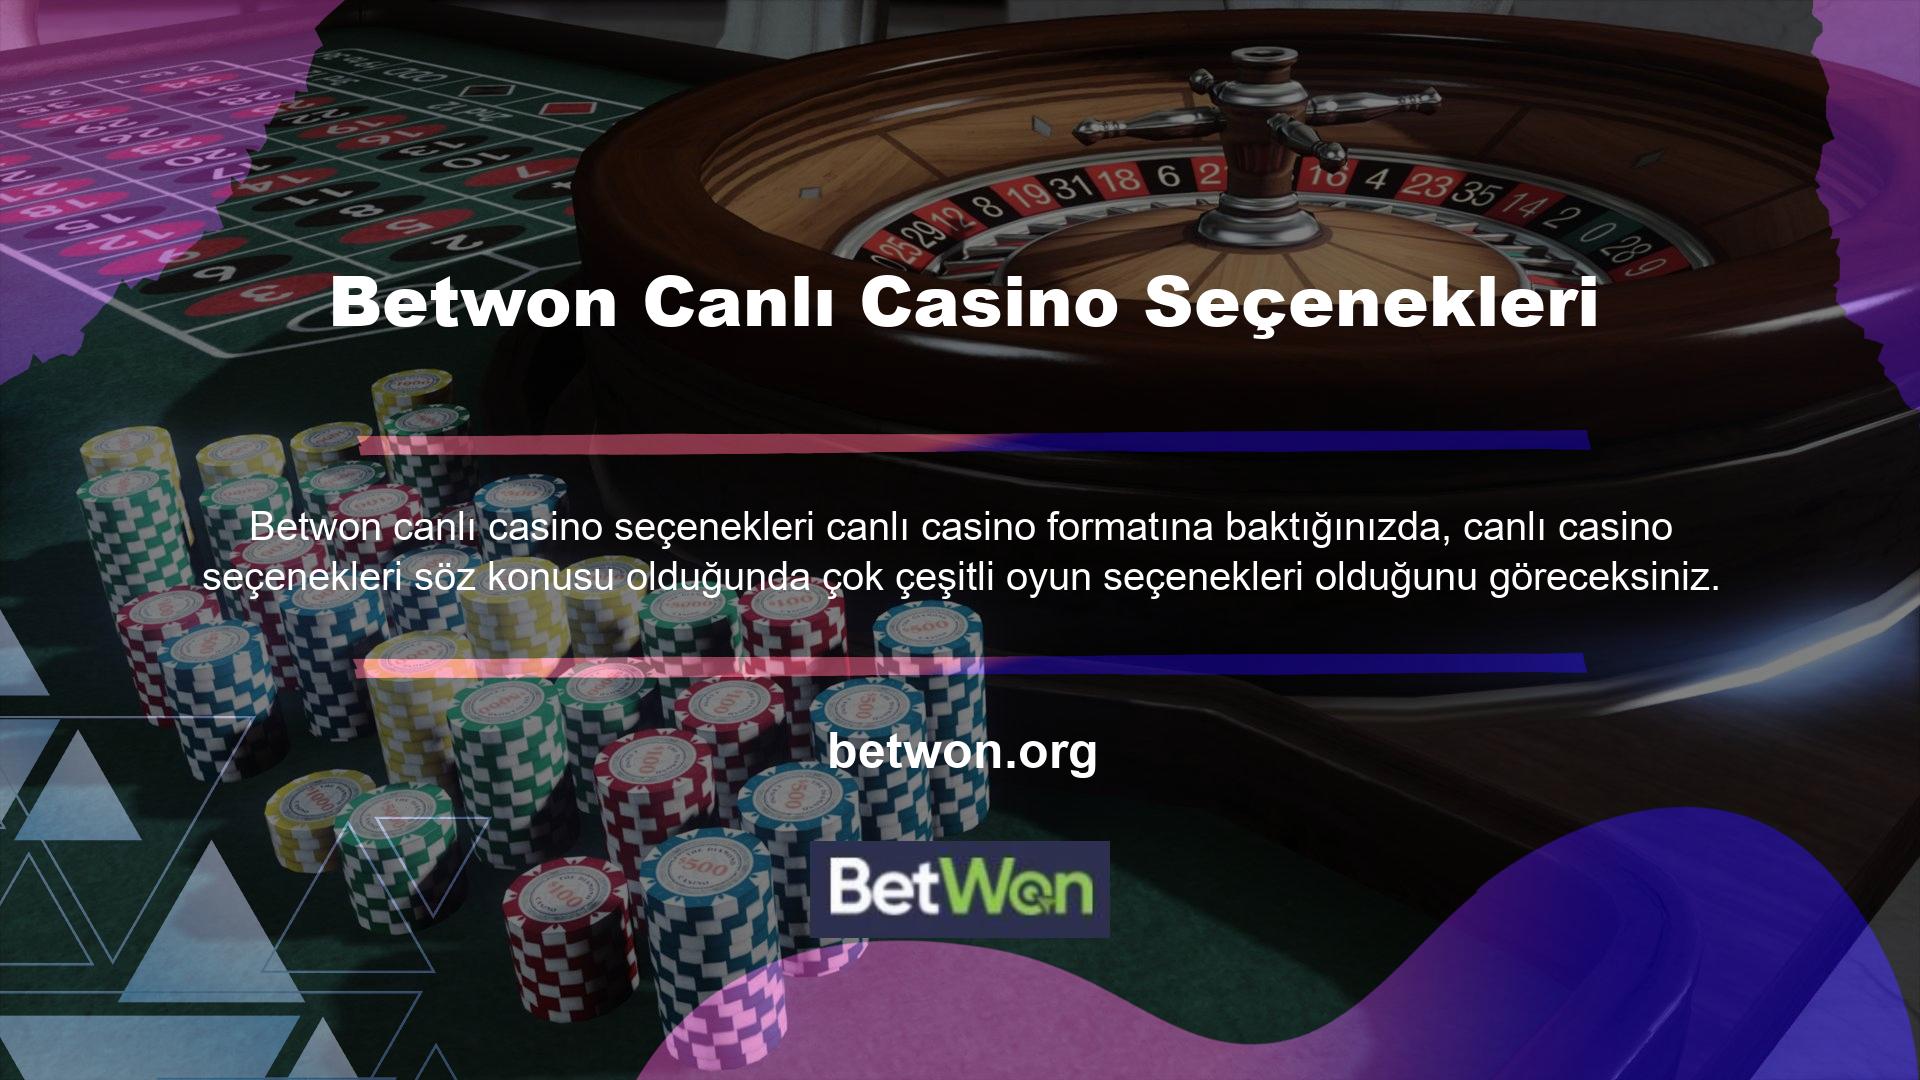 Casino kısmı genel olarak slot makinelerini ve slot oyunlarını ifade eder